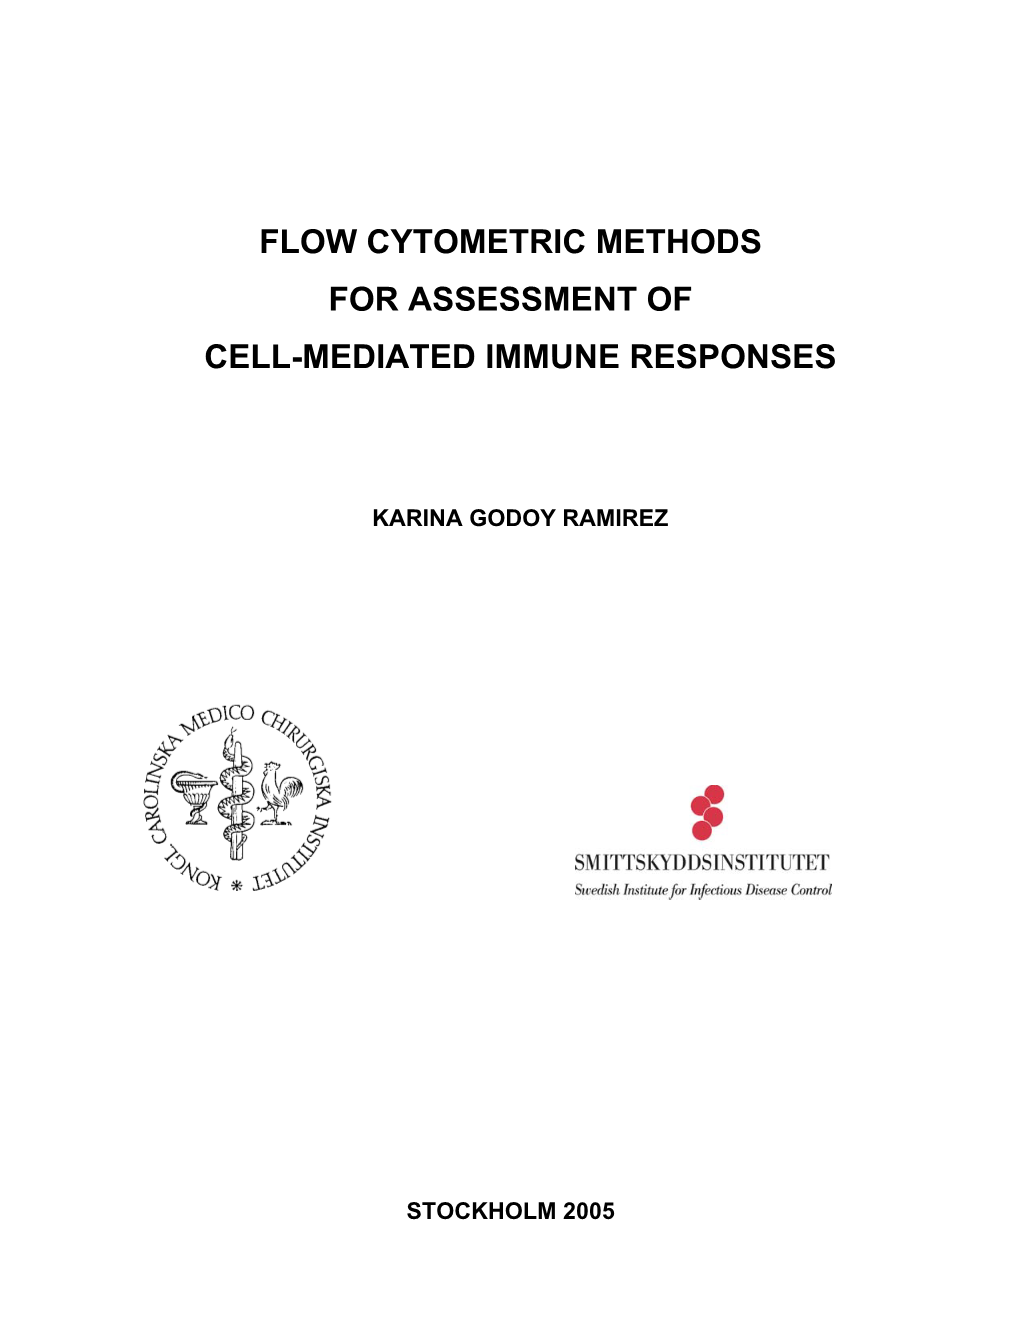 Flow Cytometric Methods for Assessment of Cell-Mediated Immune Responses